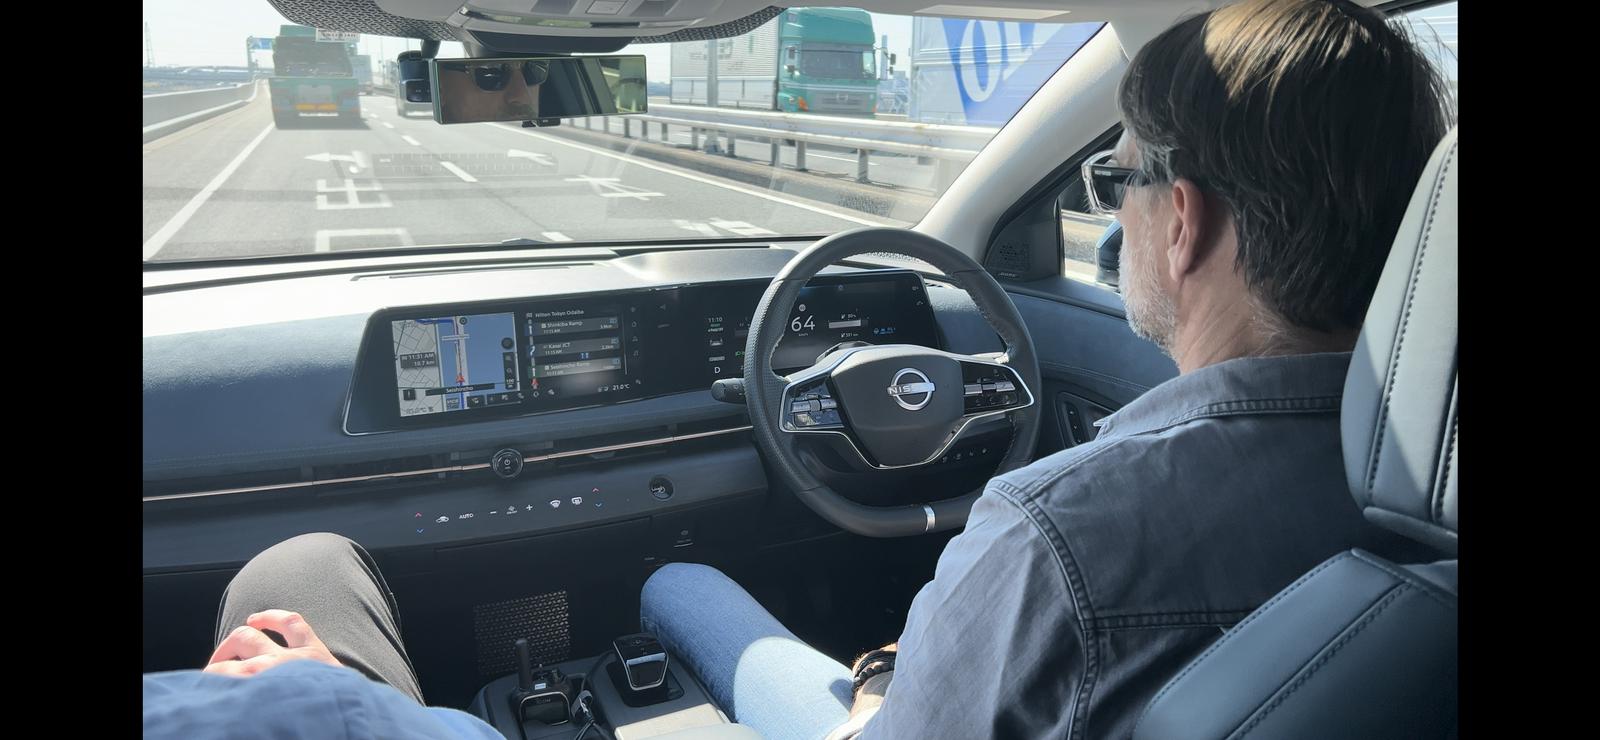 Vožnja po tokijski obvoznici brez rok na volanu je bila zanimiva in res manj stresna izkušnja. Foto: MMC RTV SLO/Avtomobilnost